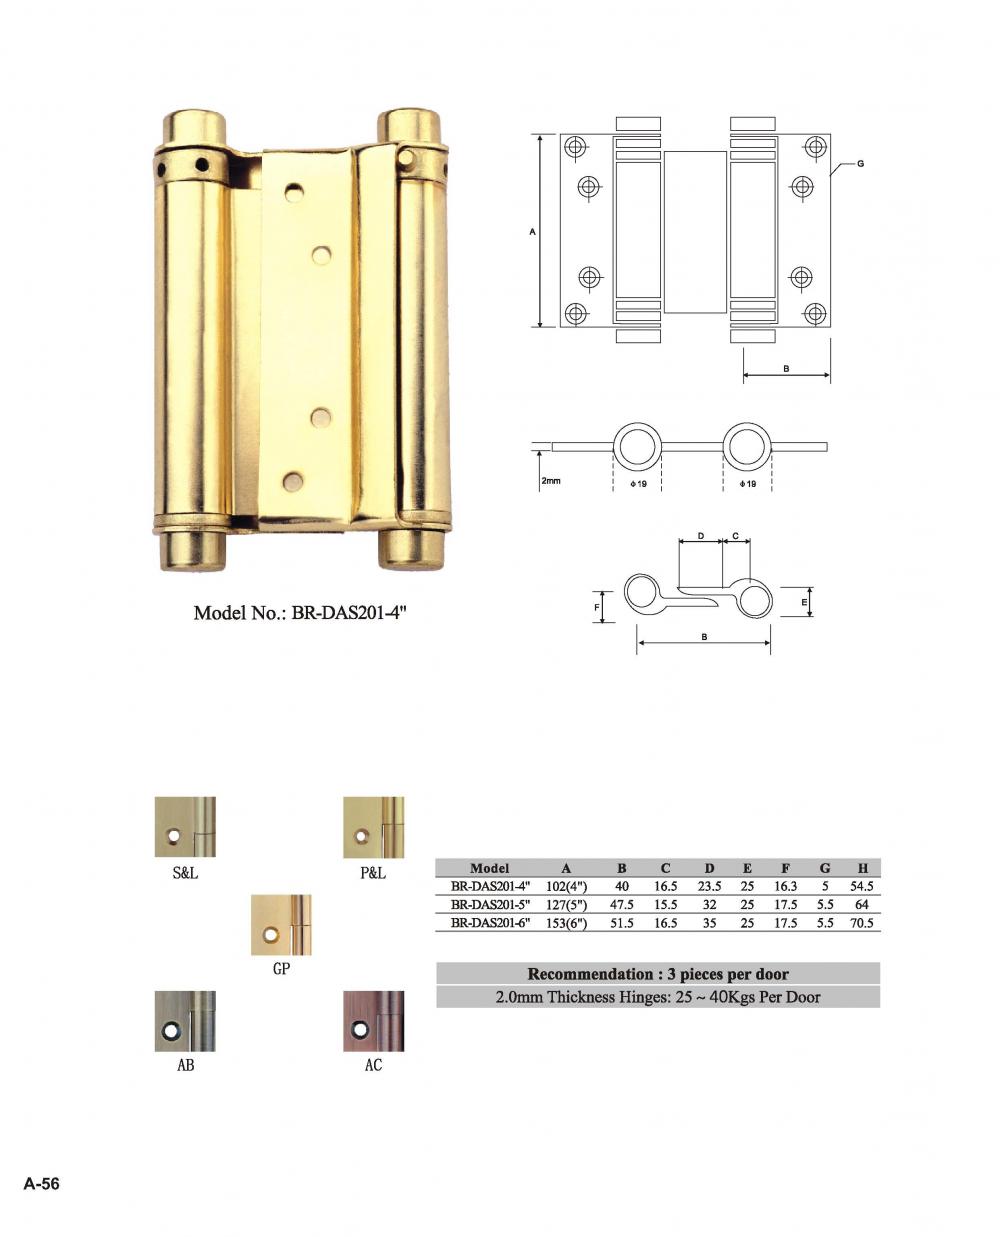 Rust-resistant brass door hinges